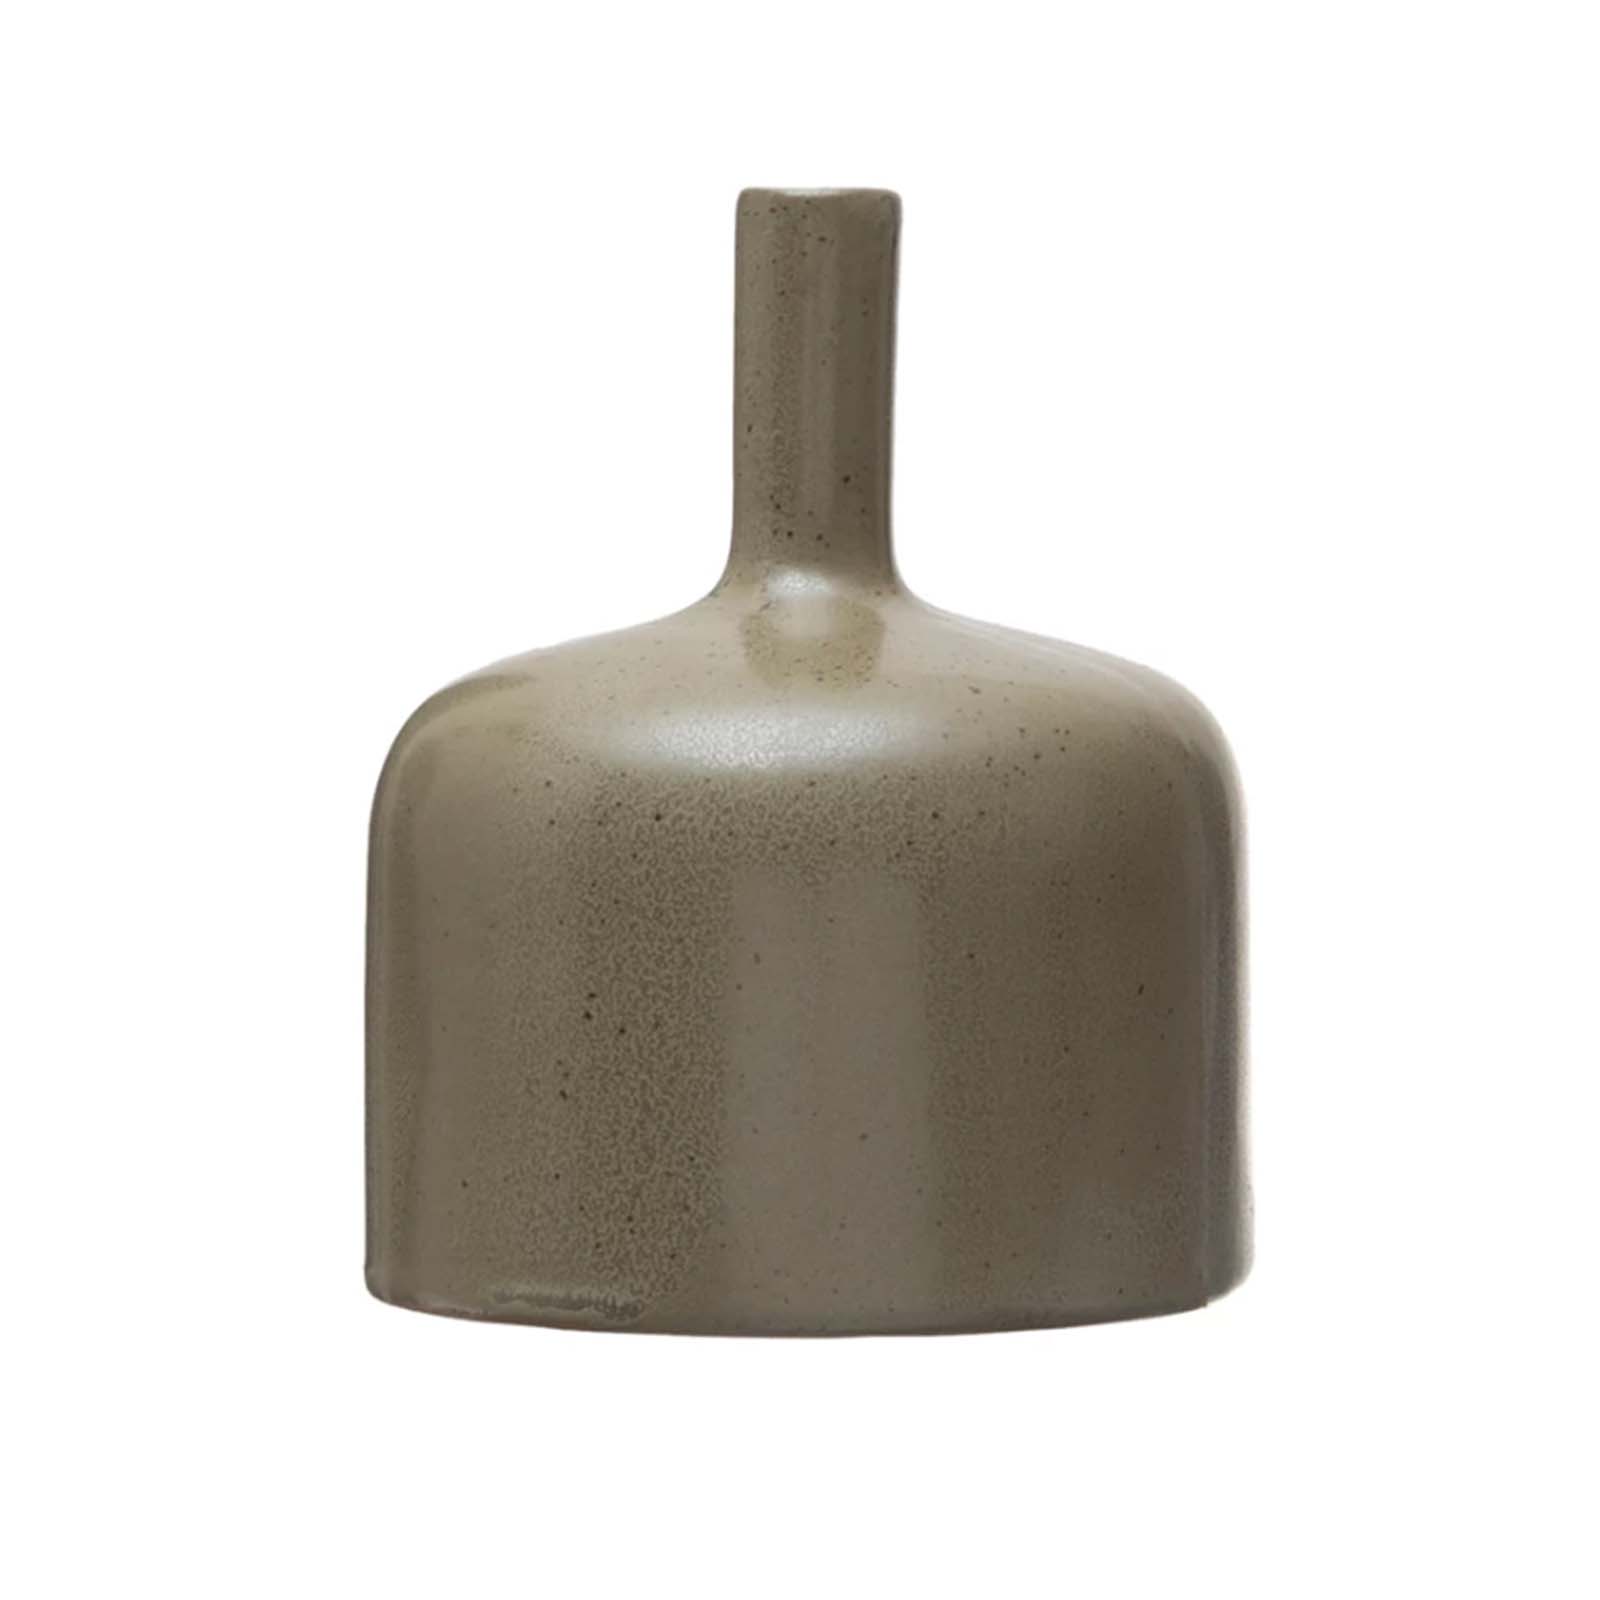 Stoneware Vase - Brown Glaze